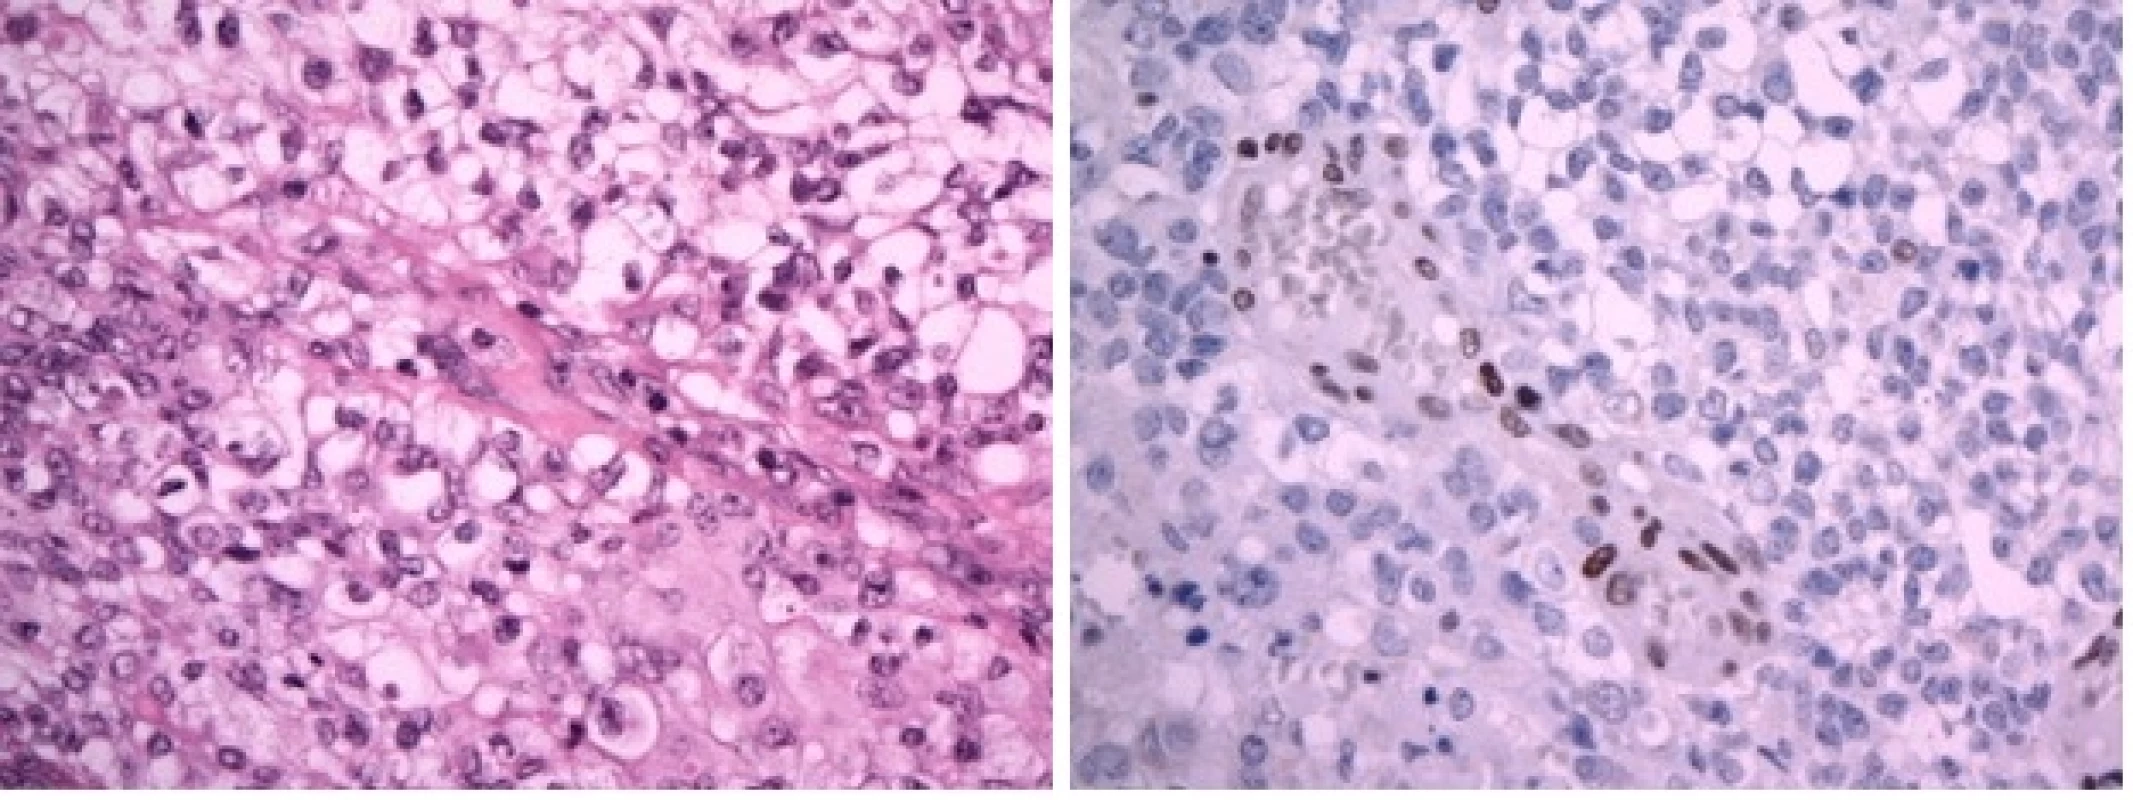 A Atypický teratoidní/rhabdoidní tumor (AT/RT), WHO grade IV. Nádor převážně sestává ze solidně alveolárně uspořádaných polygonálních buněk se světlou nebo jemně eozinofilní cytoplazmou. Fokálně jsou přítomny výrazné atypie, proliferační aktivita byla vysoká. (hematoxylin-eozin, originální zvětšení x400).
B Imunohistochemický průkaz proteinu INI1 je v nádorových buňkách negativní (při pozitivní vnitřní kontrole v endoteliích, originální zvětšení x400).
Image 4 A: Atypical teratoid-rhabdoid tumor (AT/RT), WHO grade IV. Polygonal cells with pale or slightly eosinophilic cytoplasm arranged in alveolar pattern. High proliferation aktivity. (H&amp;E x400)
Image 4 B: Imunohistochemical negativity of INI1 protein in tumour cells (retained positivity in endothelial cells, x400)